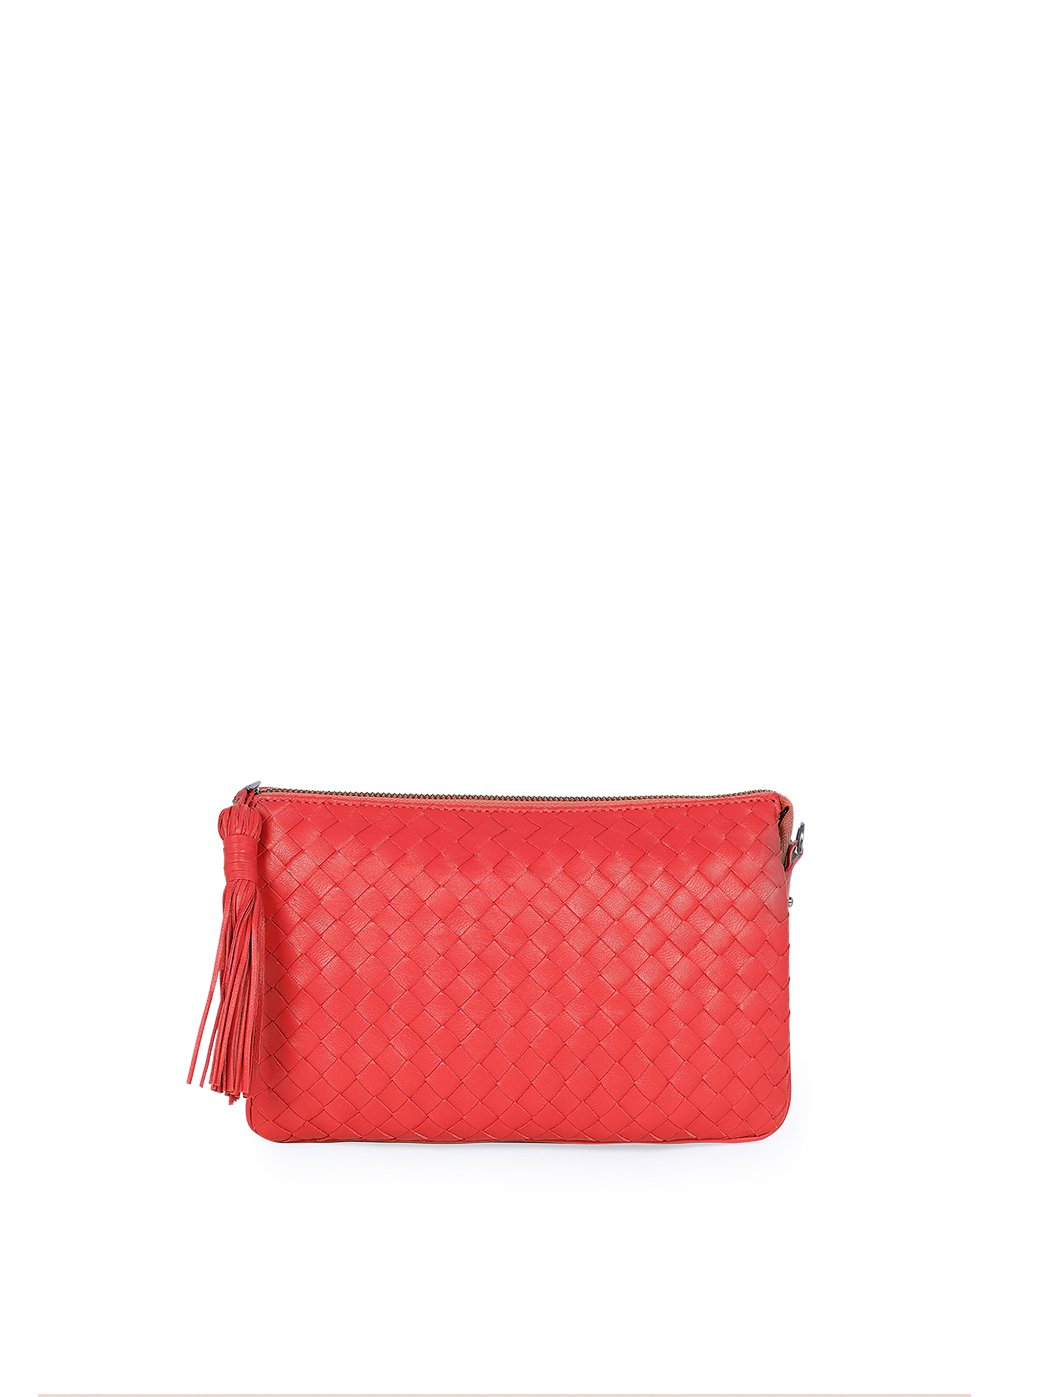 Плетеная сумка – клатч со съемным ремнем коллекции Intrecci красного цвета